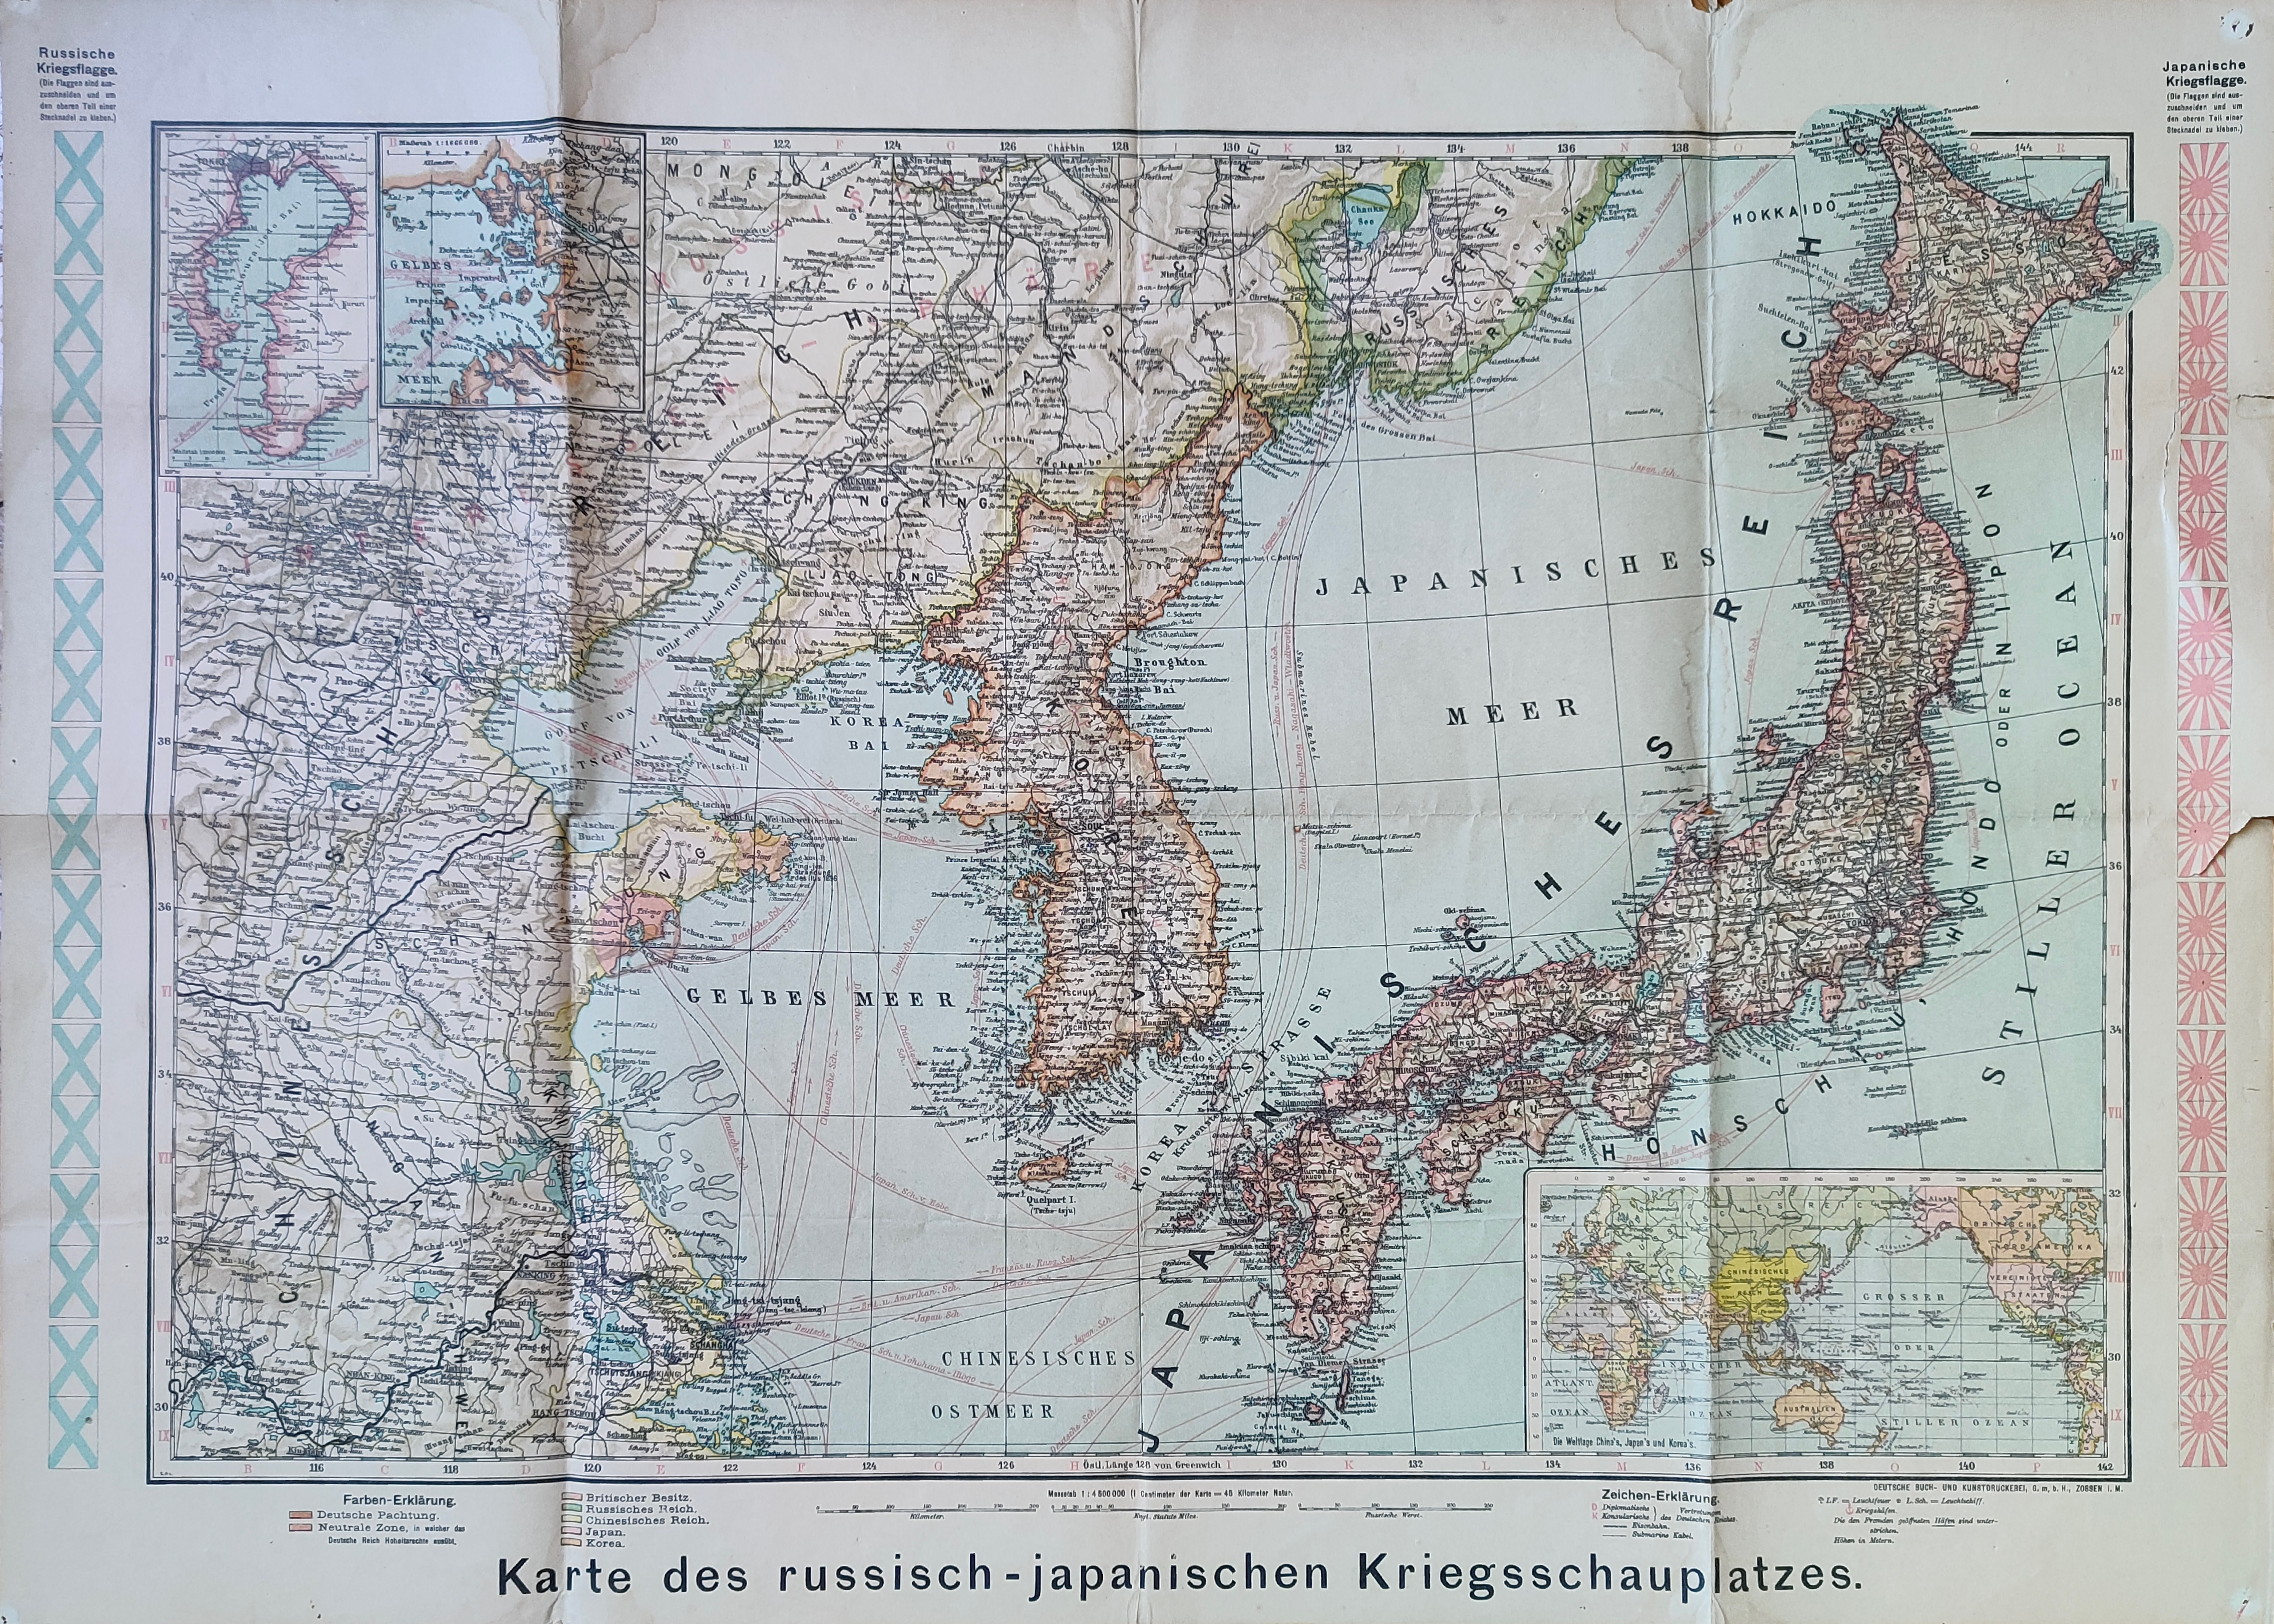 Karte des russisch-japanischen Kriegsschauplatzes